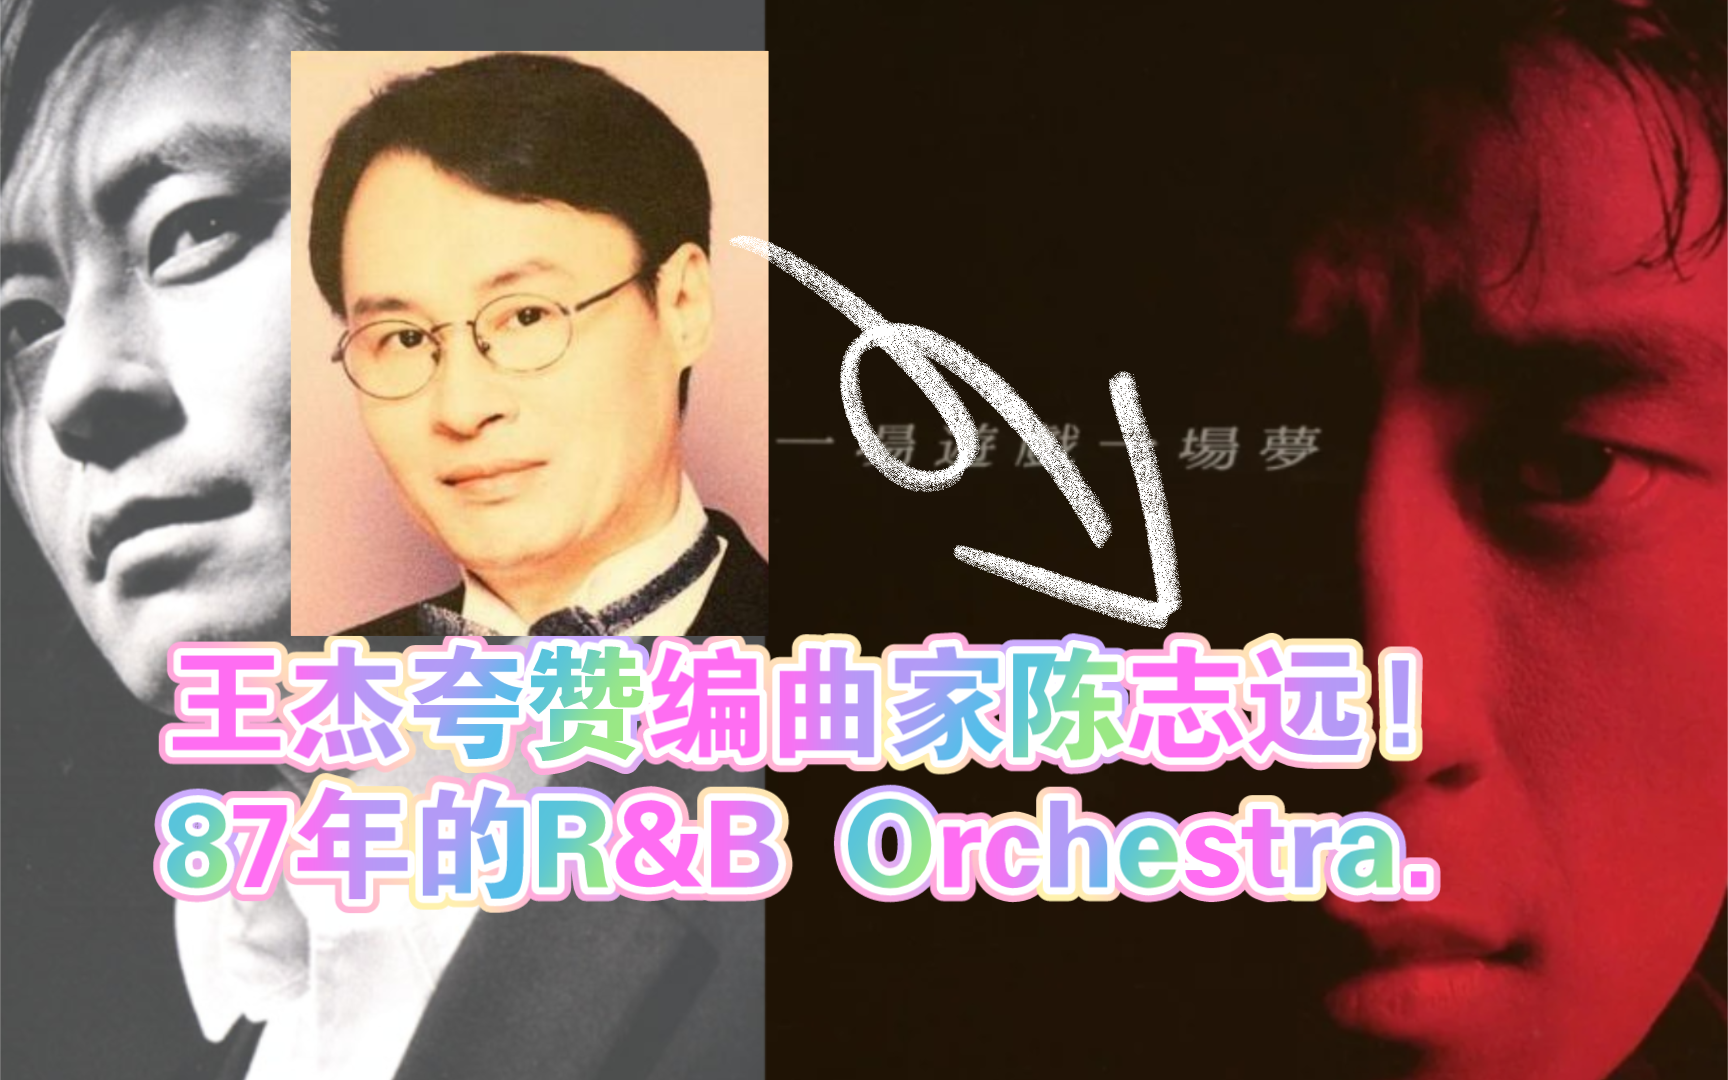 王杰用“R&B祖宗”夸赞编曲家陈志远的超前创作!2003年。